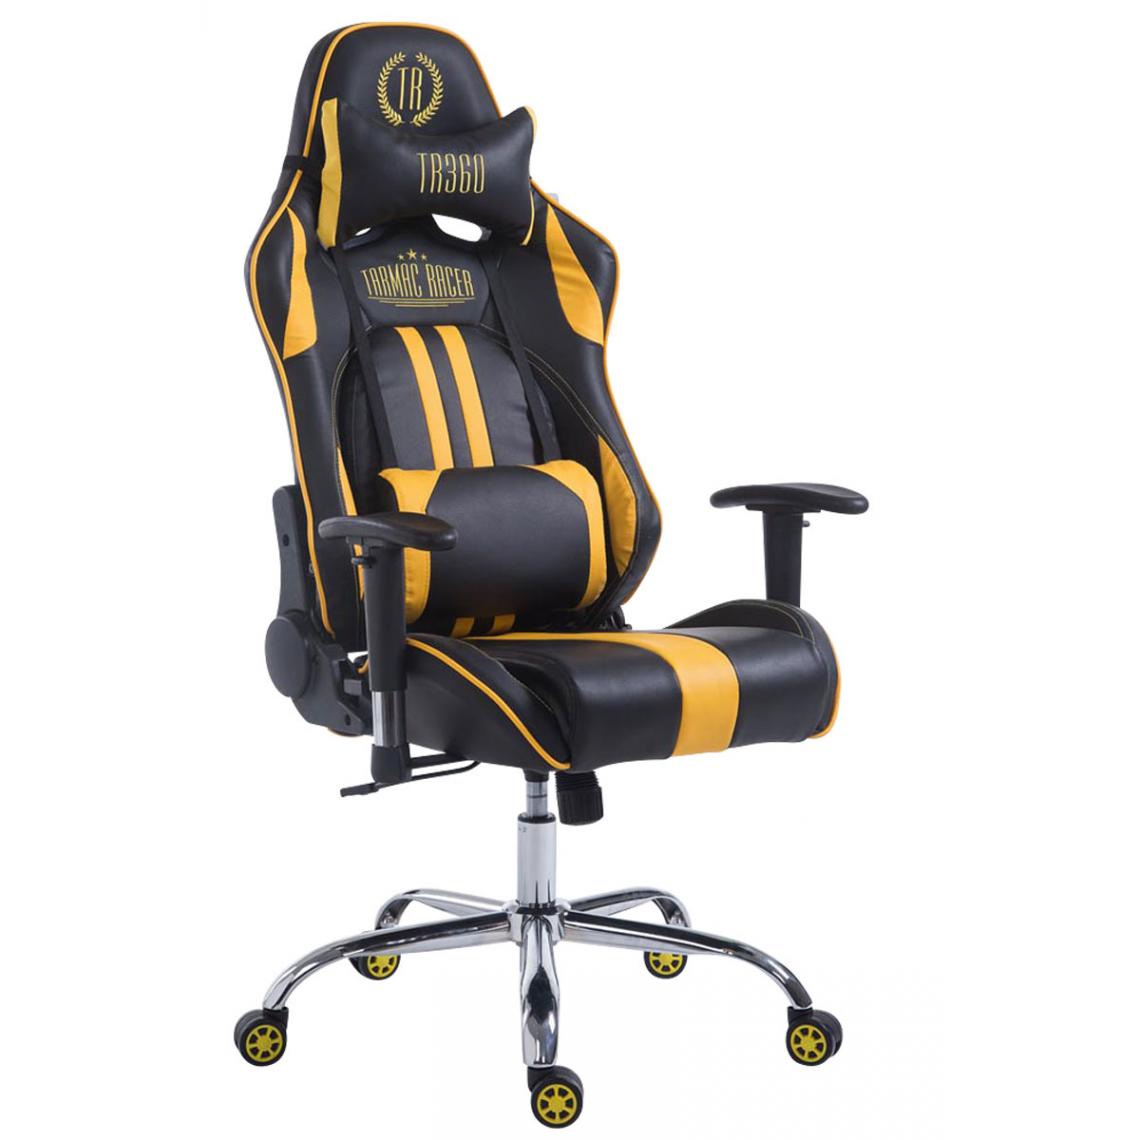 Icaverne - sublime Chaise de bureau famille Luanda Limit V2 cuir synthétique sans repose-pieds couleur noir jaune - Chaises